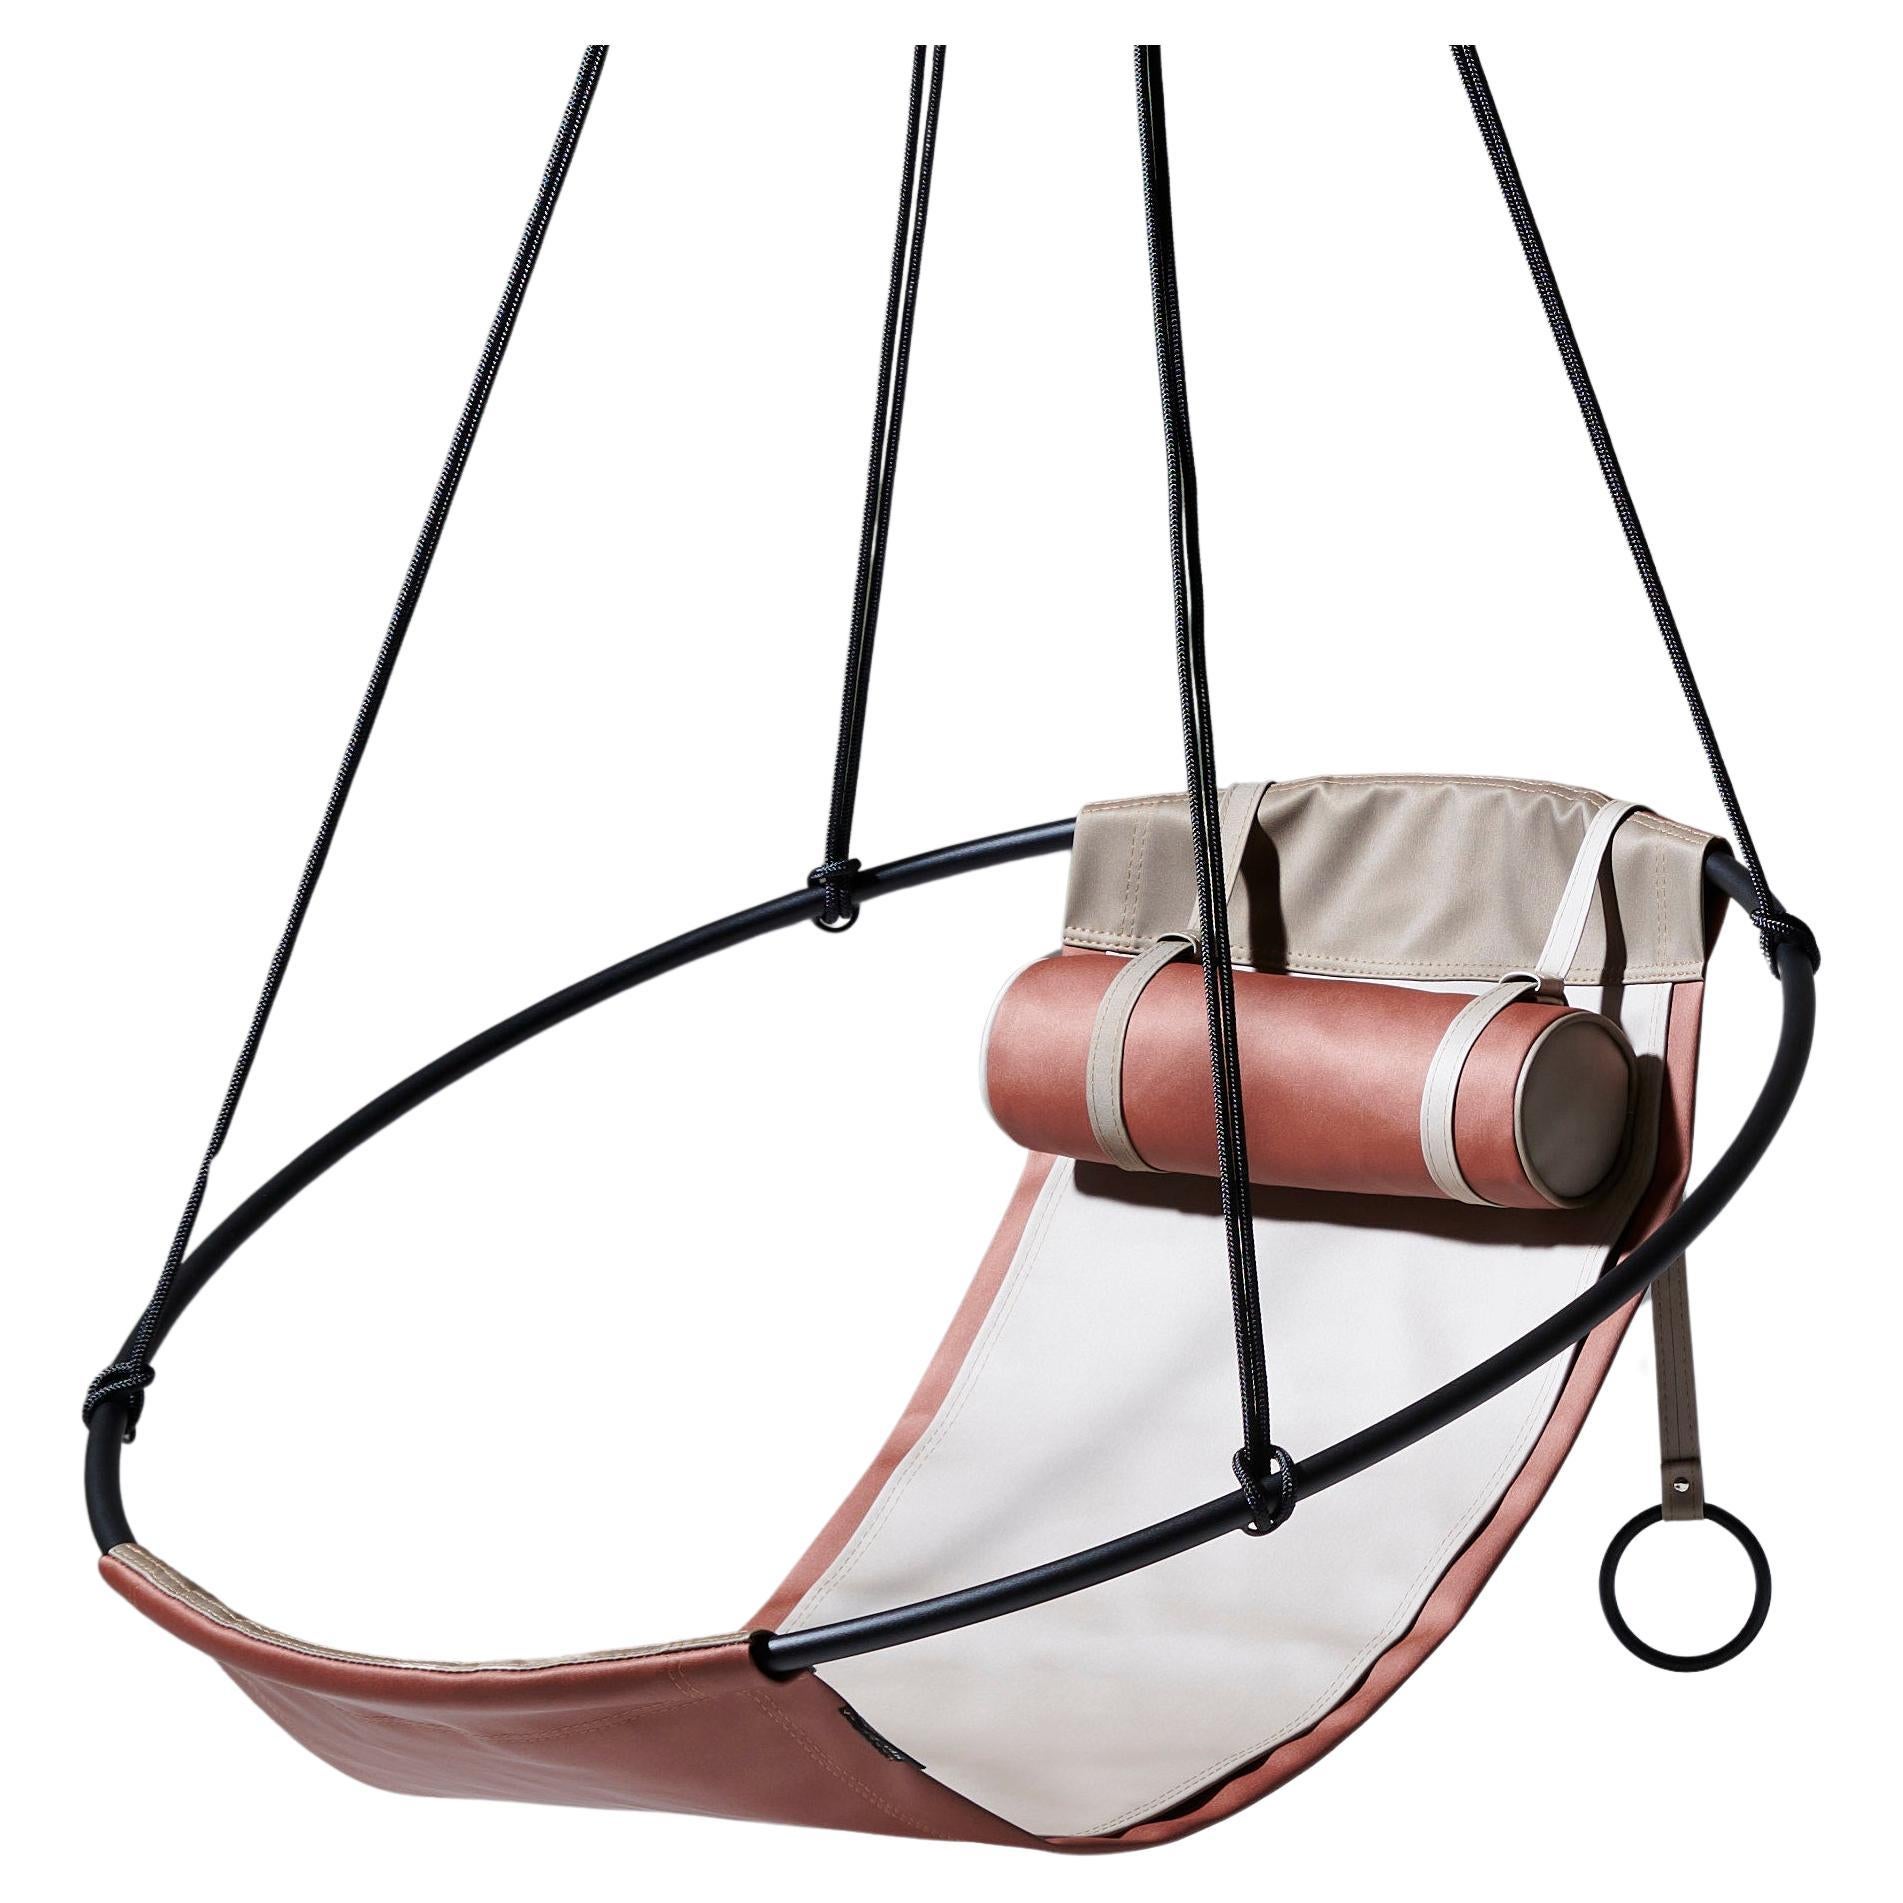 Modern Outdoor Garden Swing Chair in Earth Tones